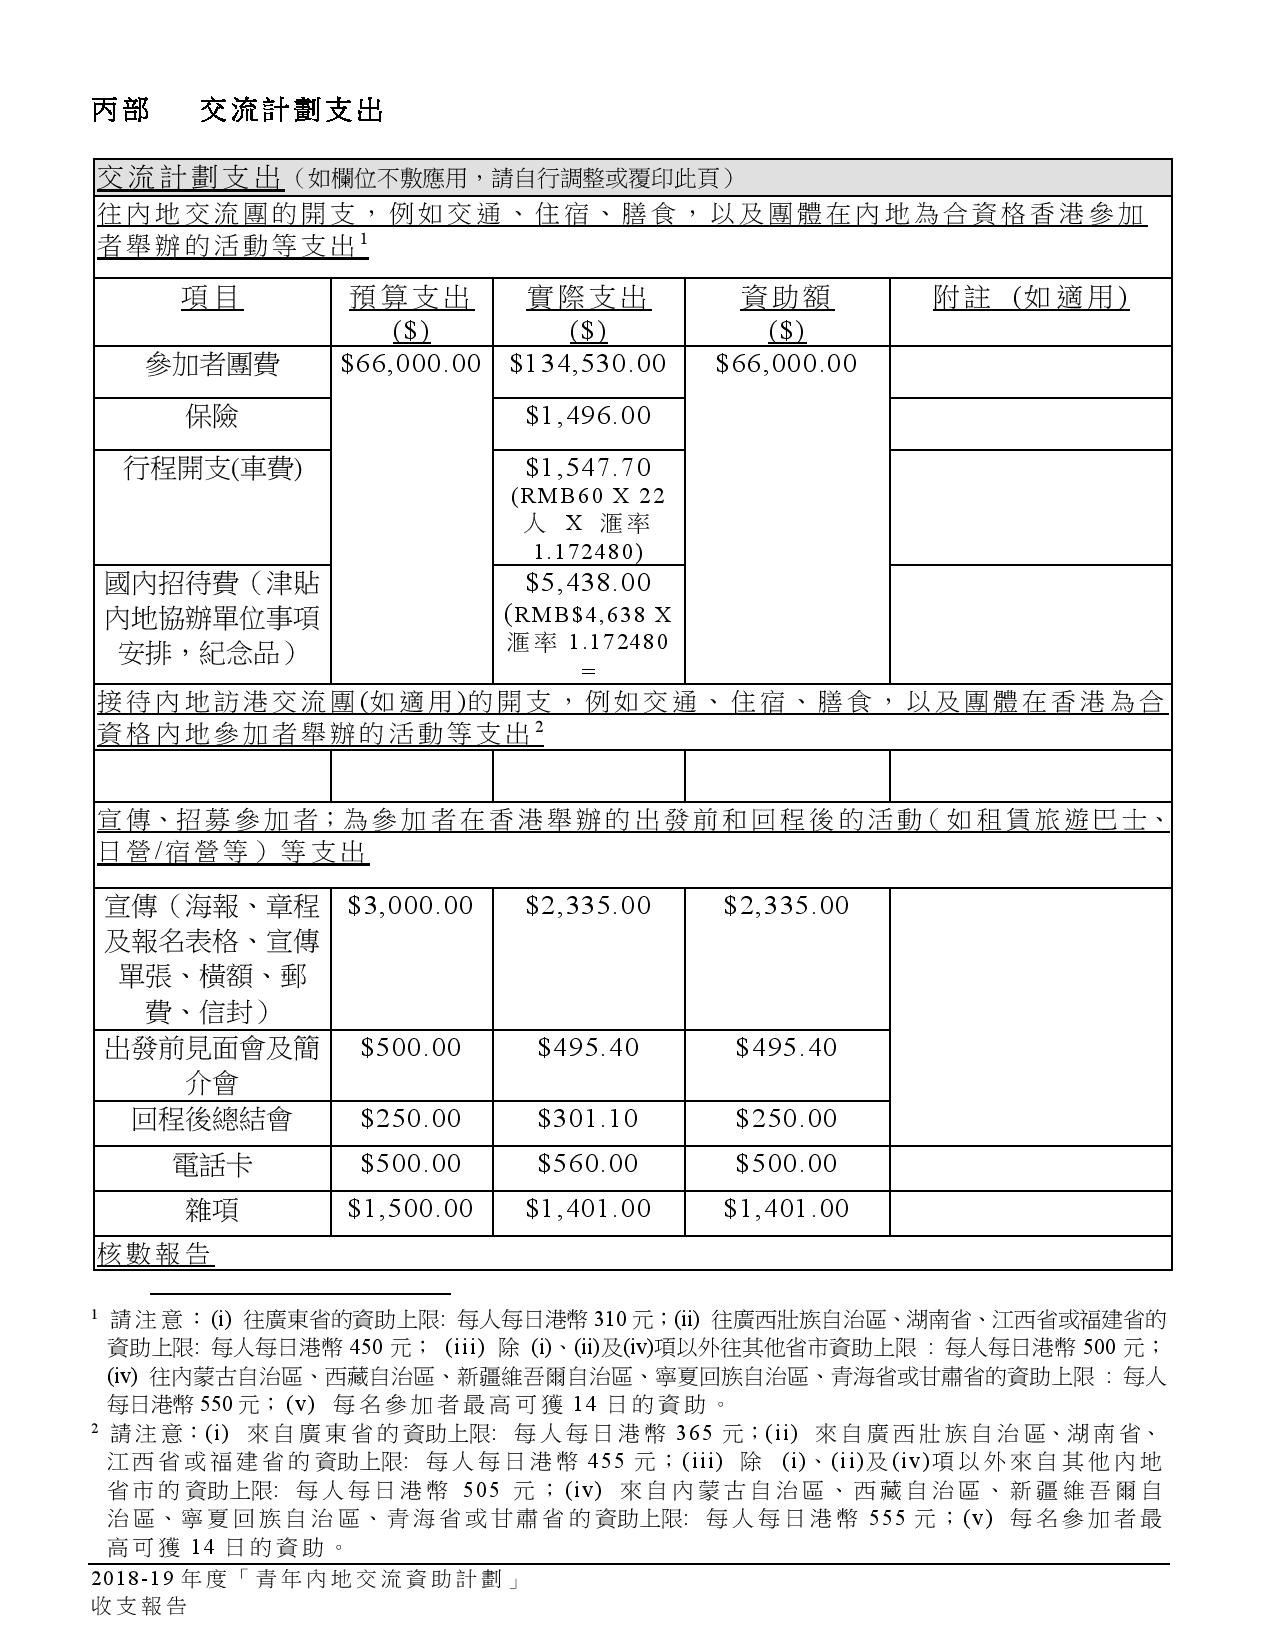 HKCFA_雲南團_附件八 - 收支報告-page-002(P.2).jpg